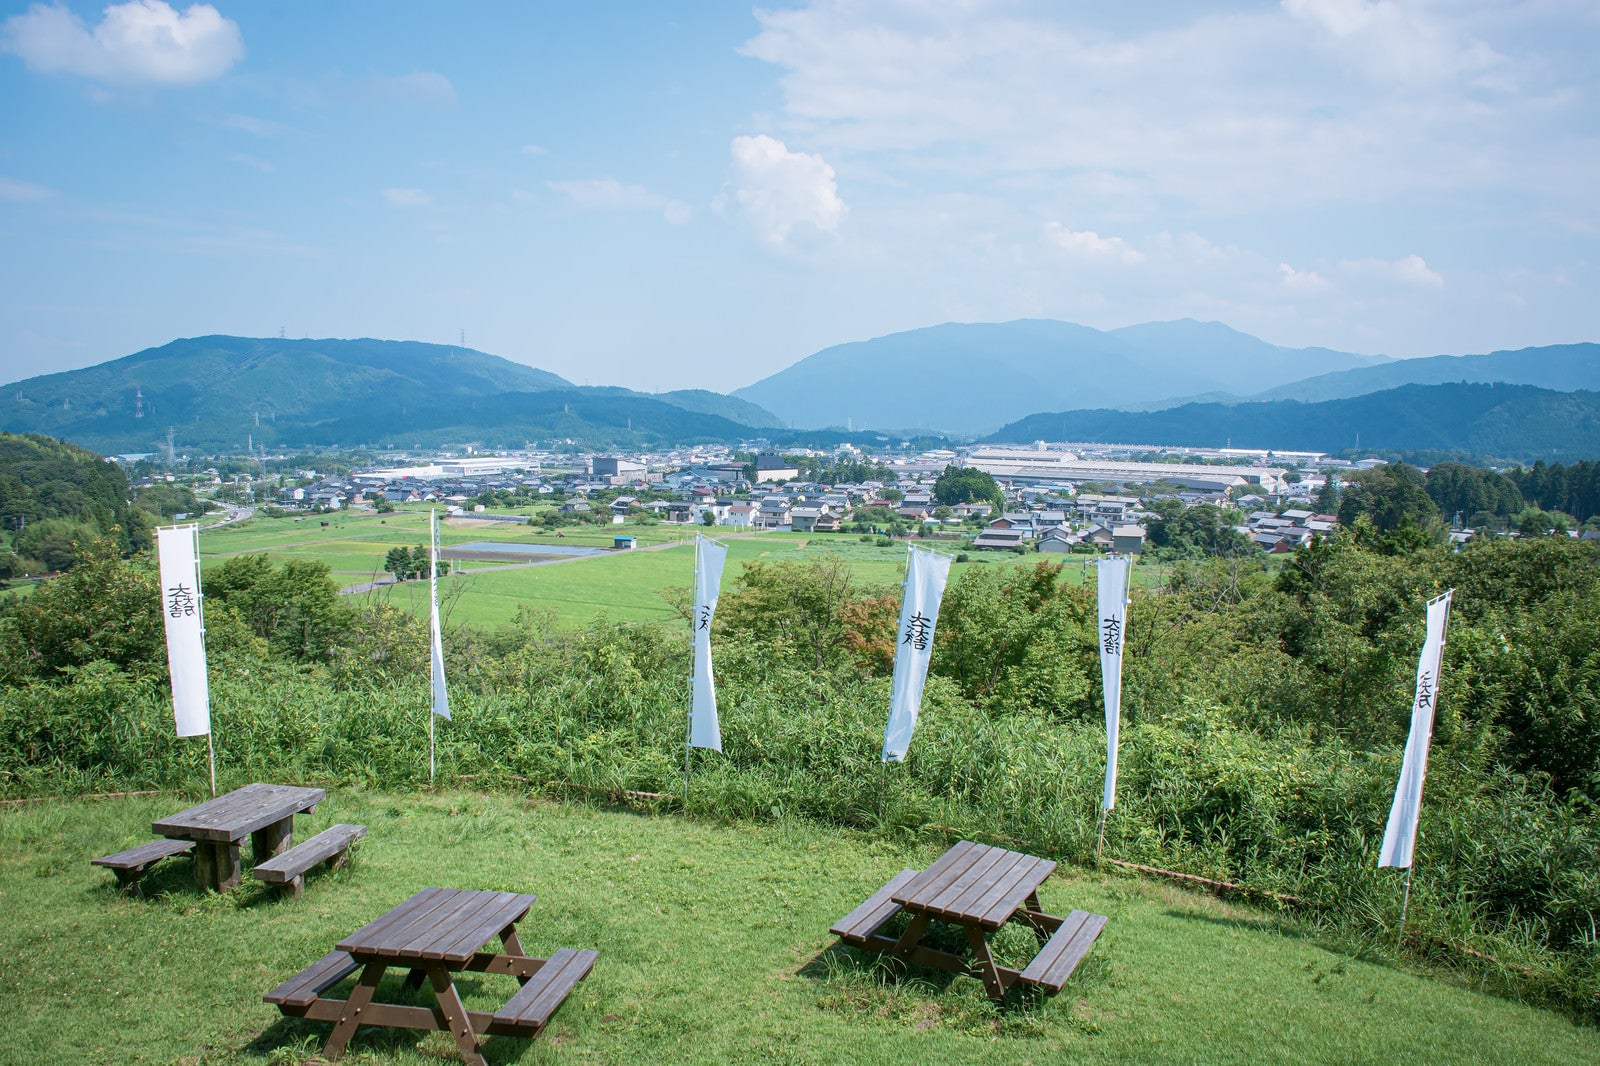 「笹尾山展望デッキから眺める休憩場所と現在の関ケ原」の写真